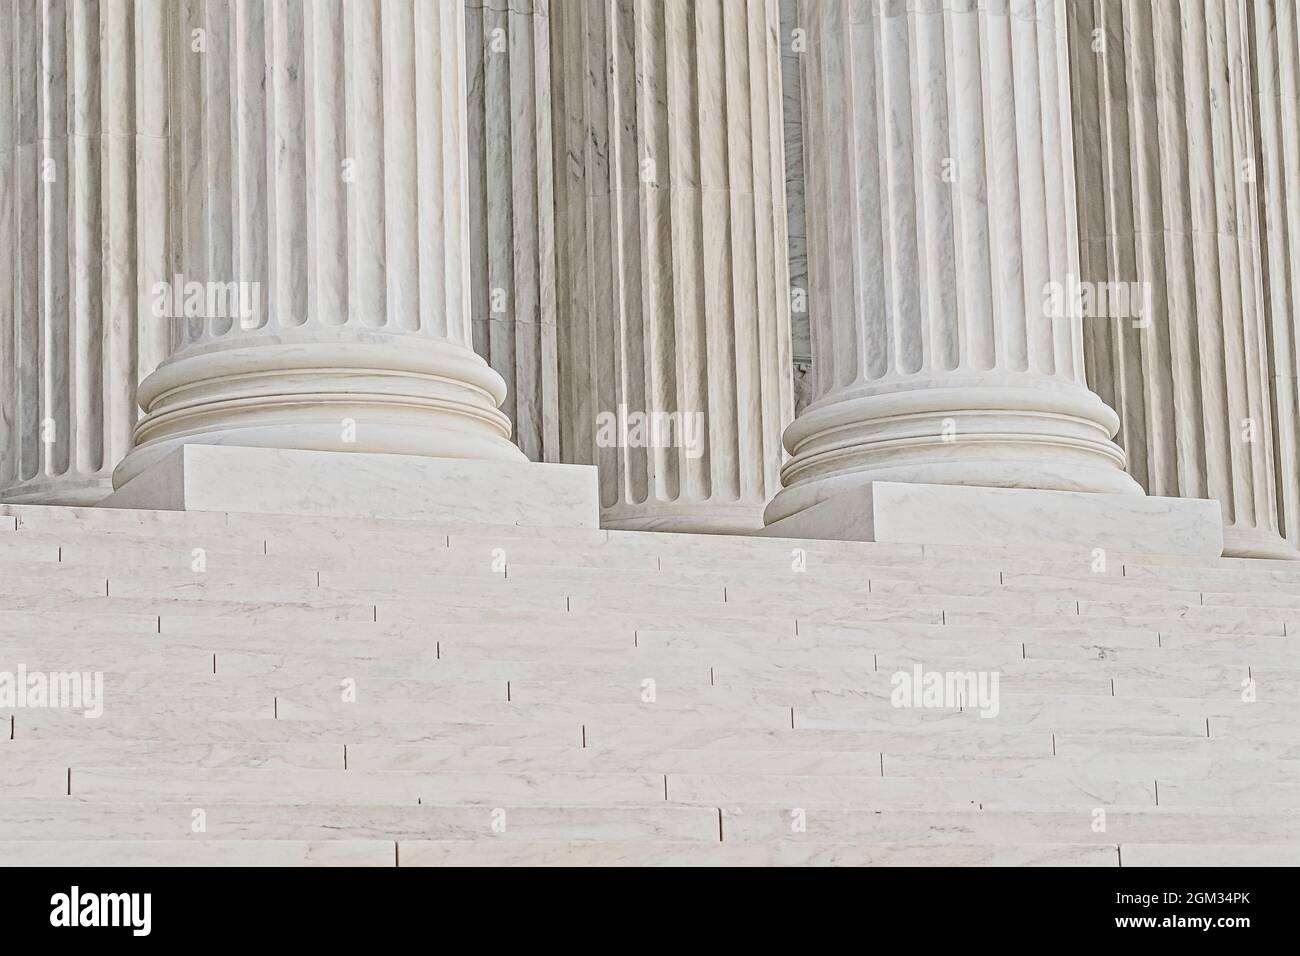 Corte Suprema degli Stati Uniti a Washington DC. La più alta corte federale degli Stati Uniti con il suo stile architettonico neoclassico. Questo im Foto Stock